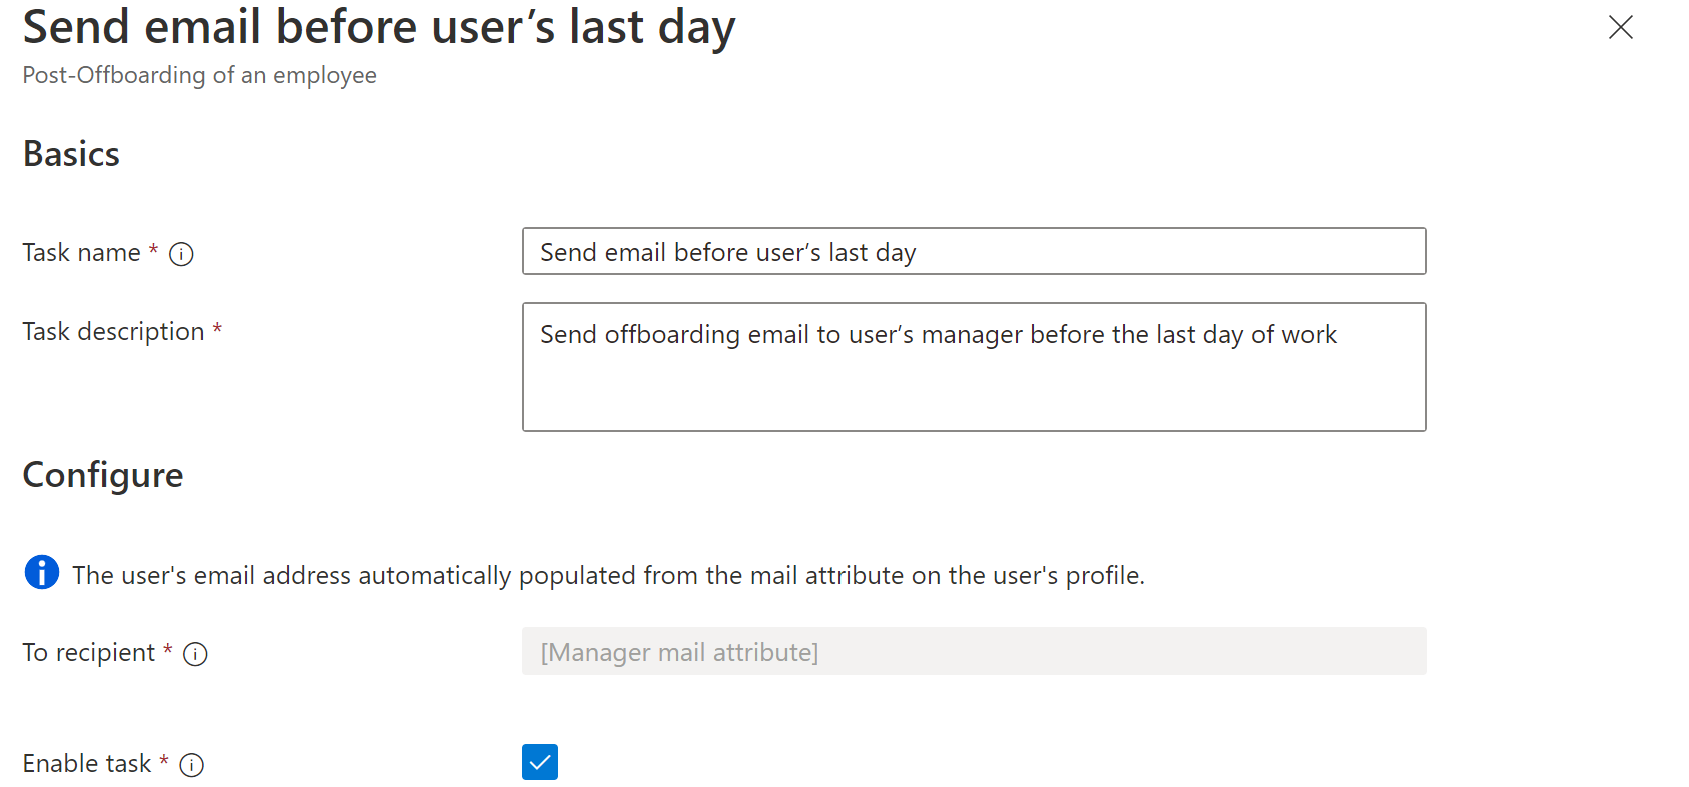 工作流任务的屏幕截图：在用户最后一天任务之前发送电子邮件。